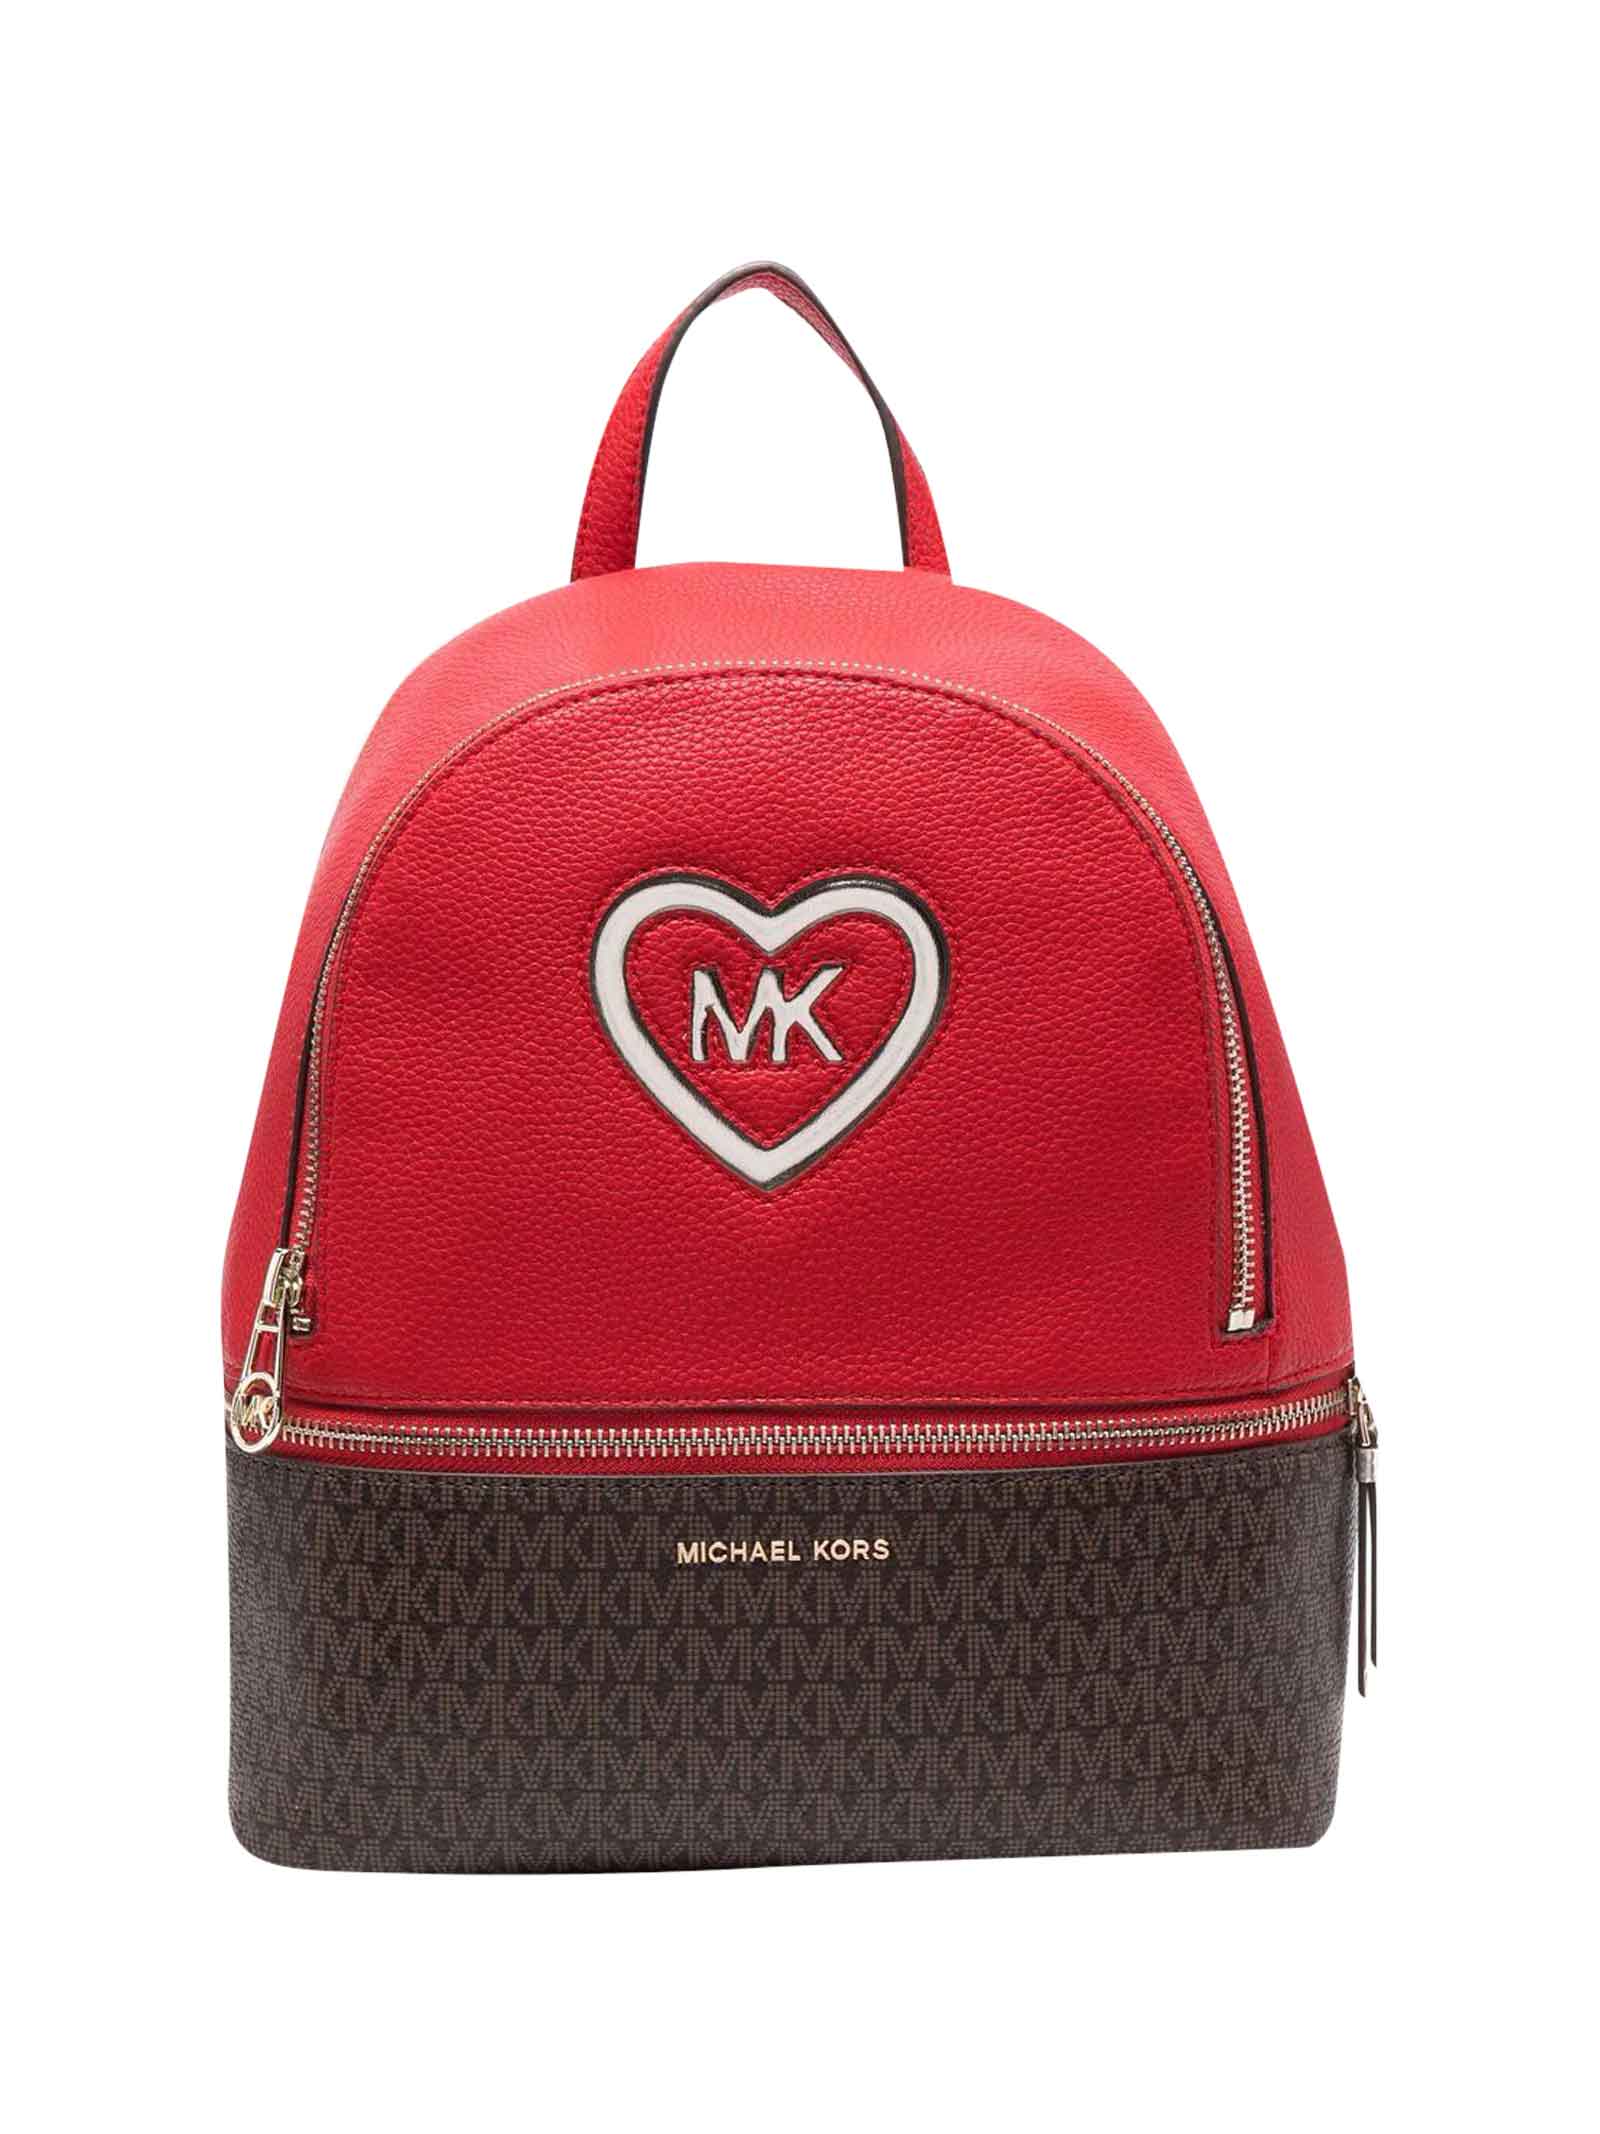 Michael Kors Red Backpack Girl